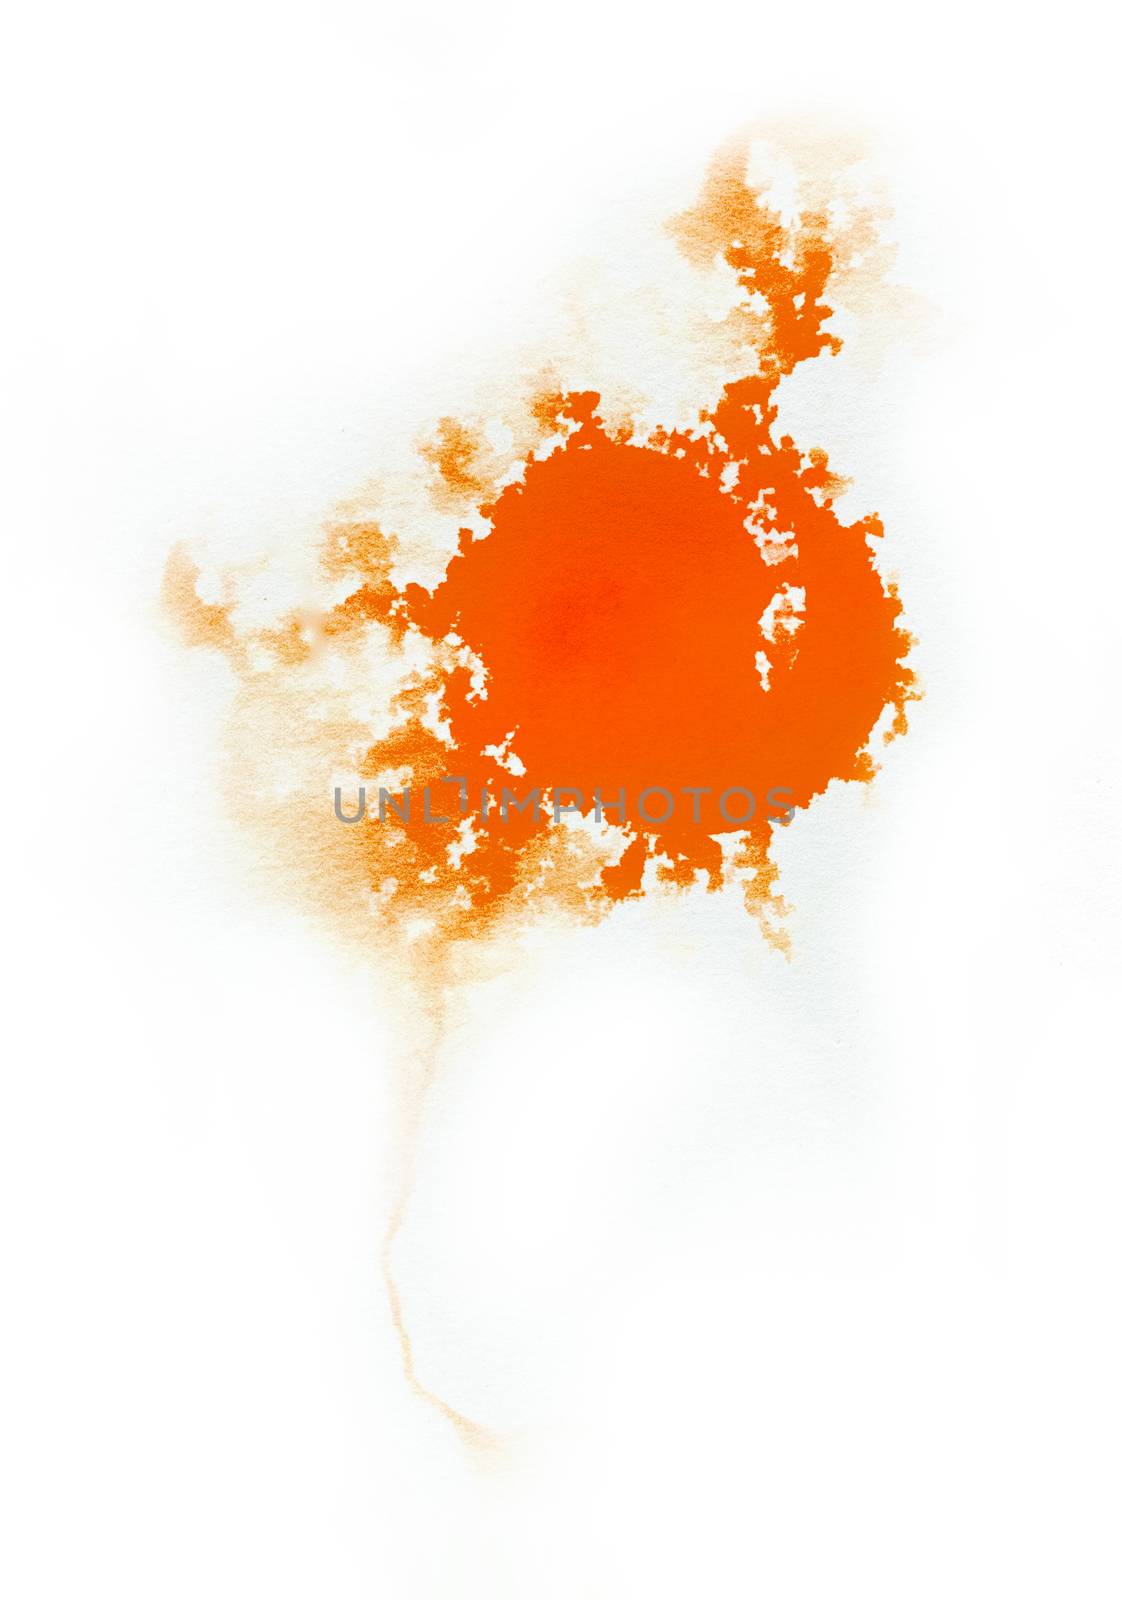 Watercolor Orange color splash on black background